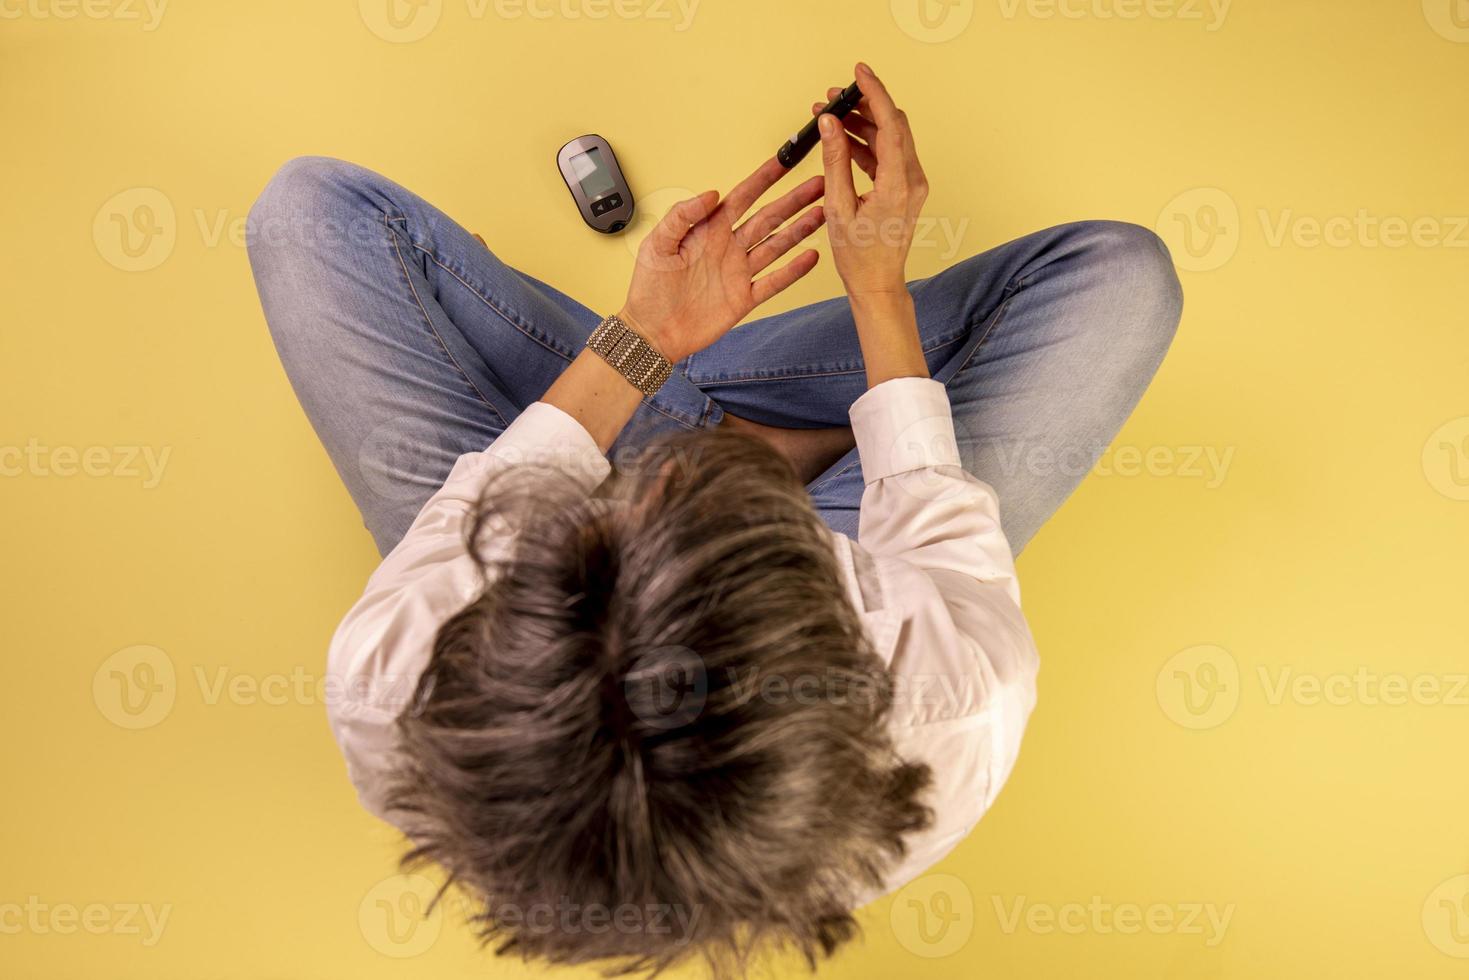 mulher diabética sentada no chão usando dispositivos para medir a glicose no sangue foto